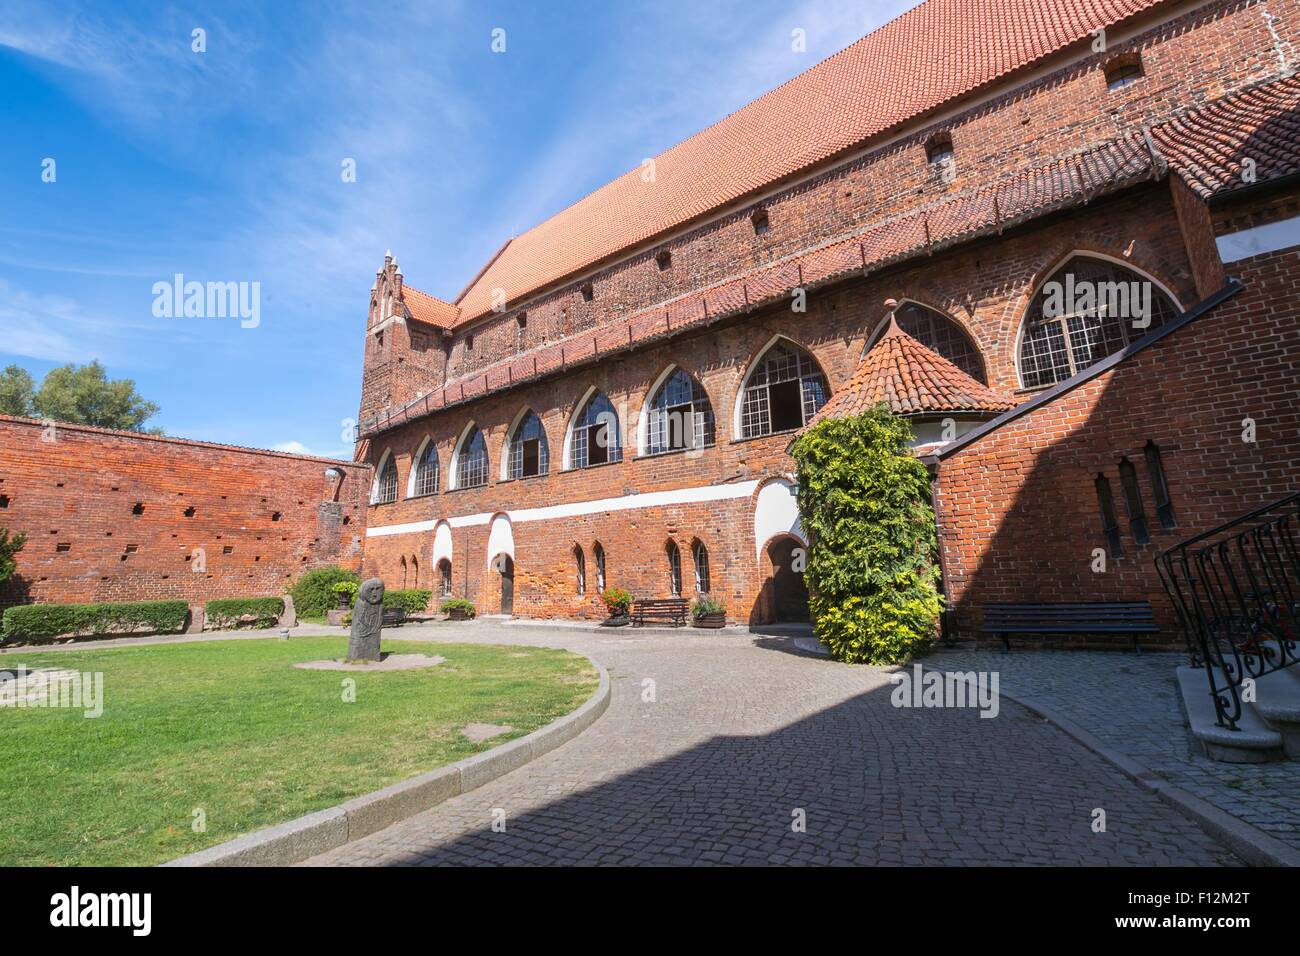 OLSZTYN, Pologne - 21 août 2015 : vieux château teutonique à Olsztyn (gothique château des Croisés), attraction touristique de l'est de Polan Banque D'Images